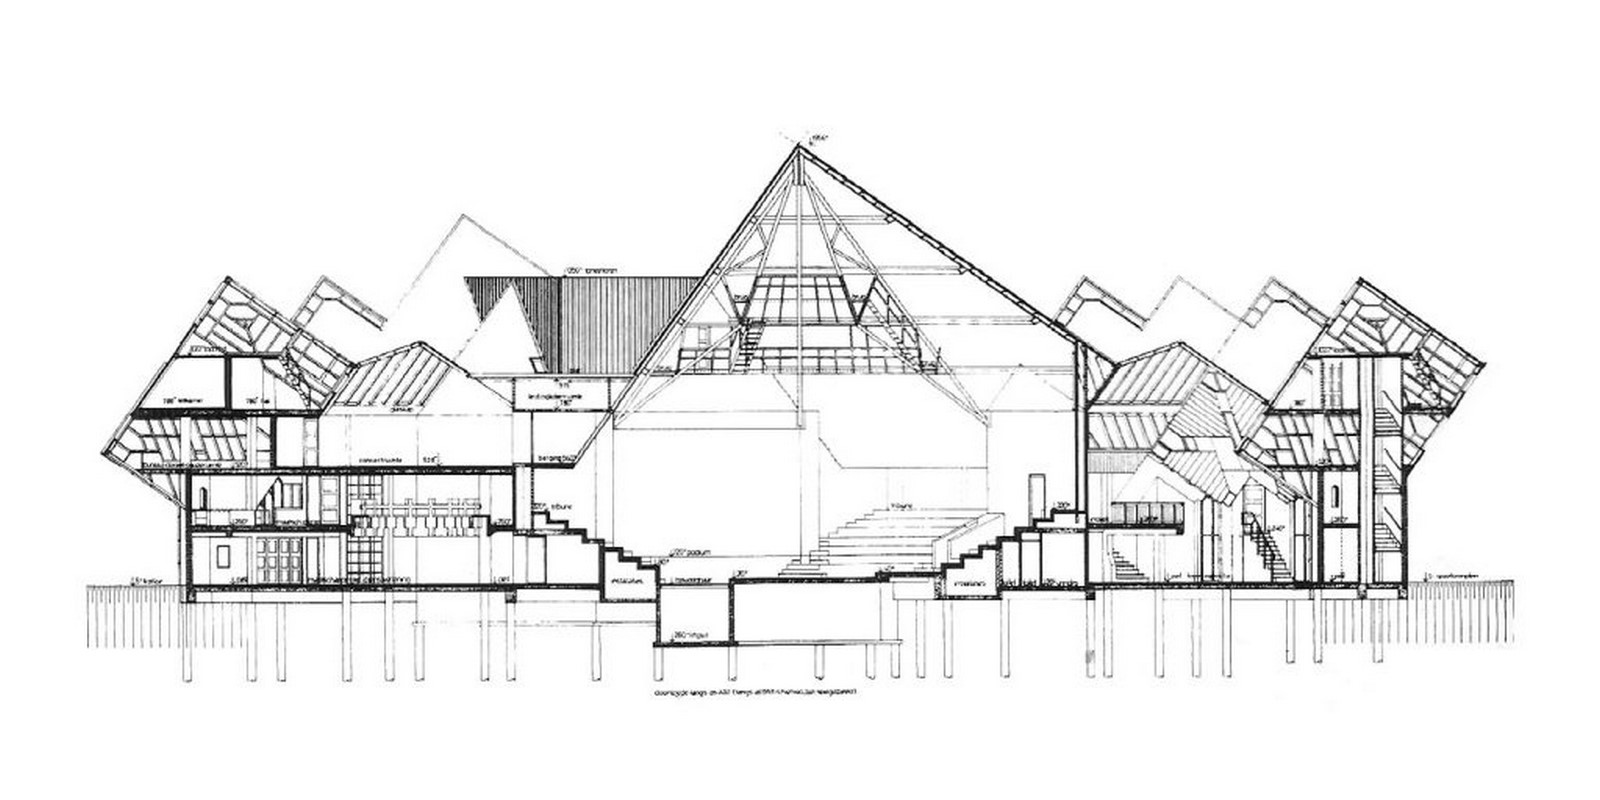 Kubuswoningen by Piet Blom: Living as an Urban Roof - Sheet10